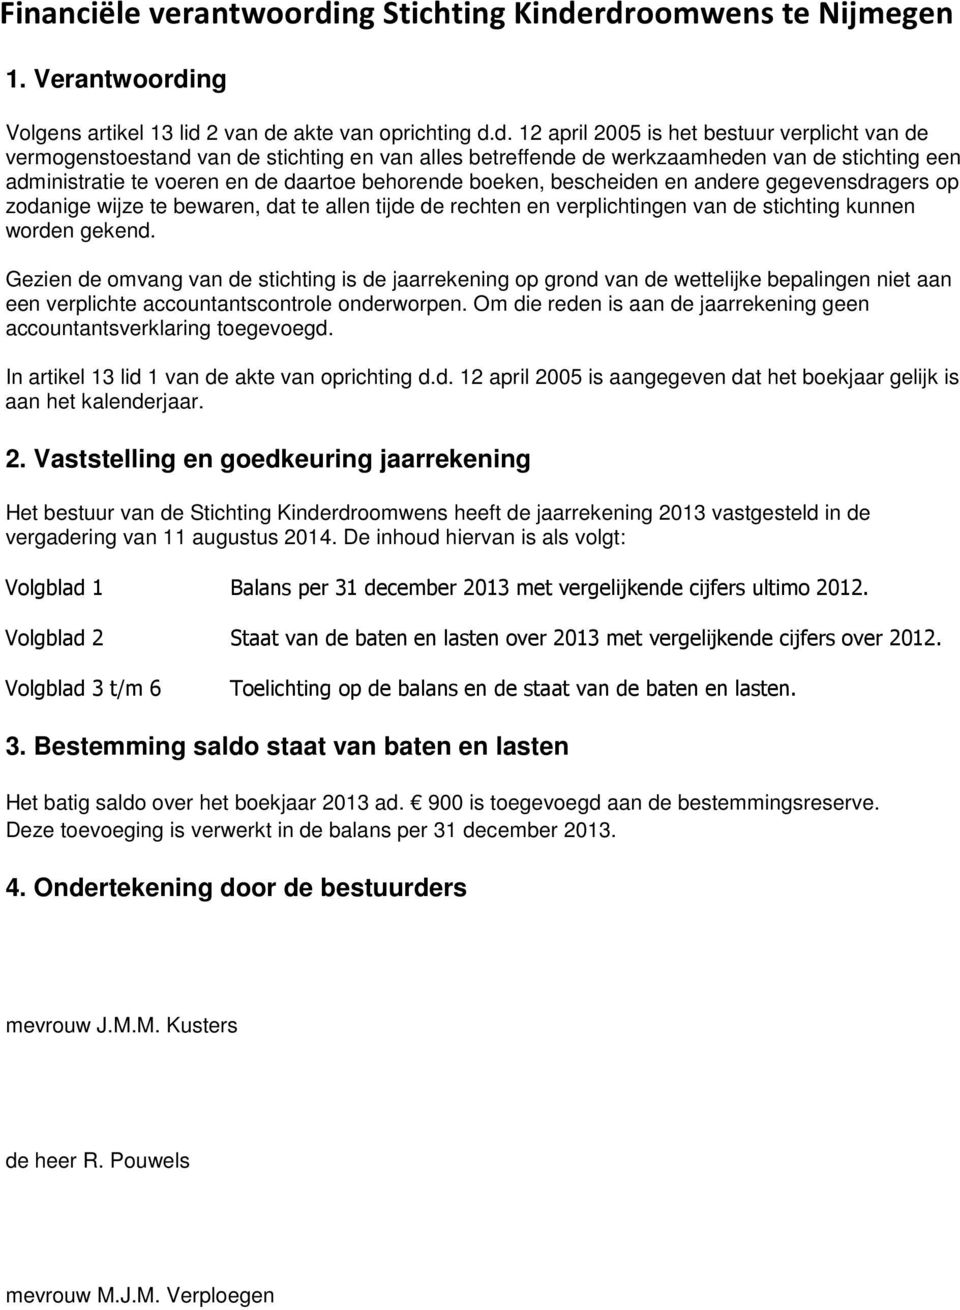 rdroomwens te Nijmegen 1. Verantwoording Volgens artikel 13 lid 2 van de akte van oprichting d.d. 12 april 2005 is het bestuur verplicht van de vermogenstoestand van de stichting en van alles